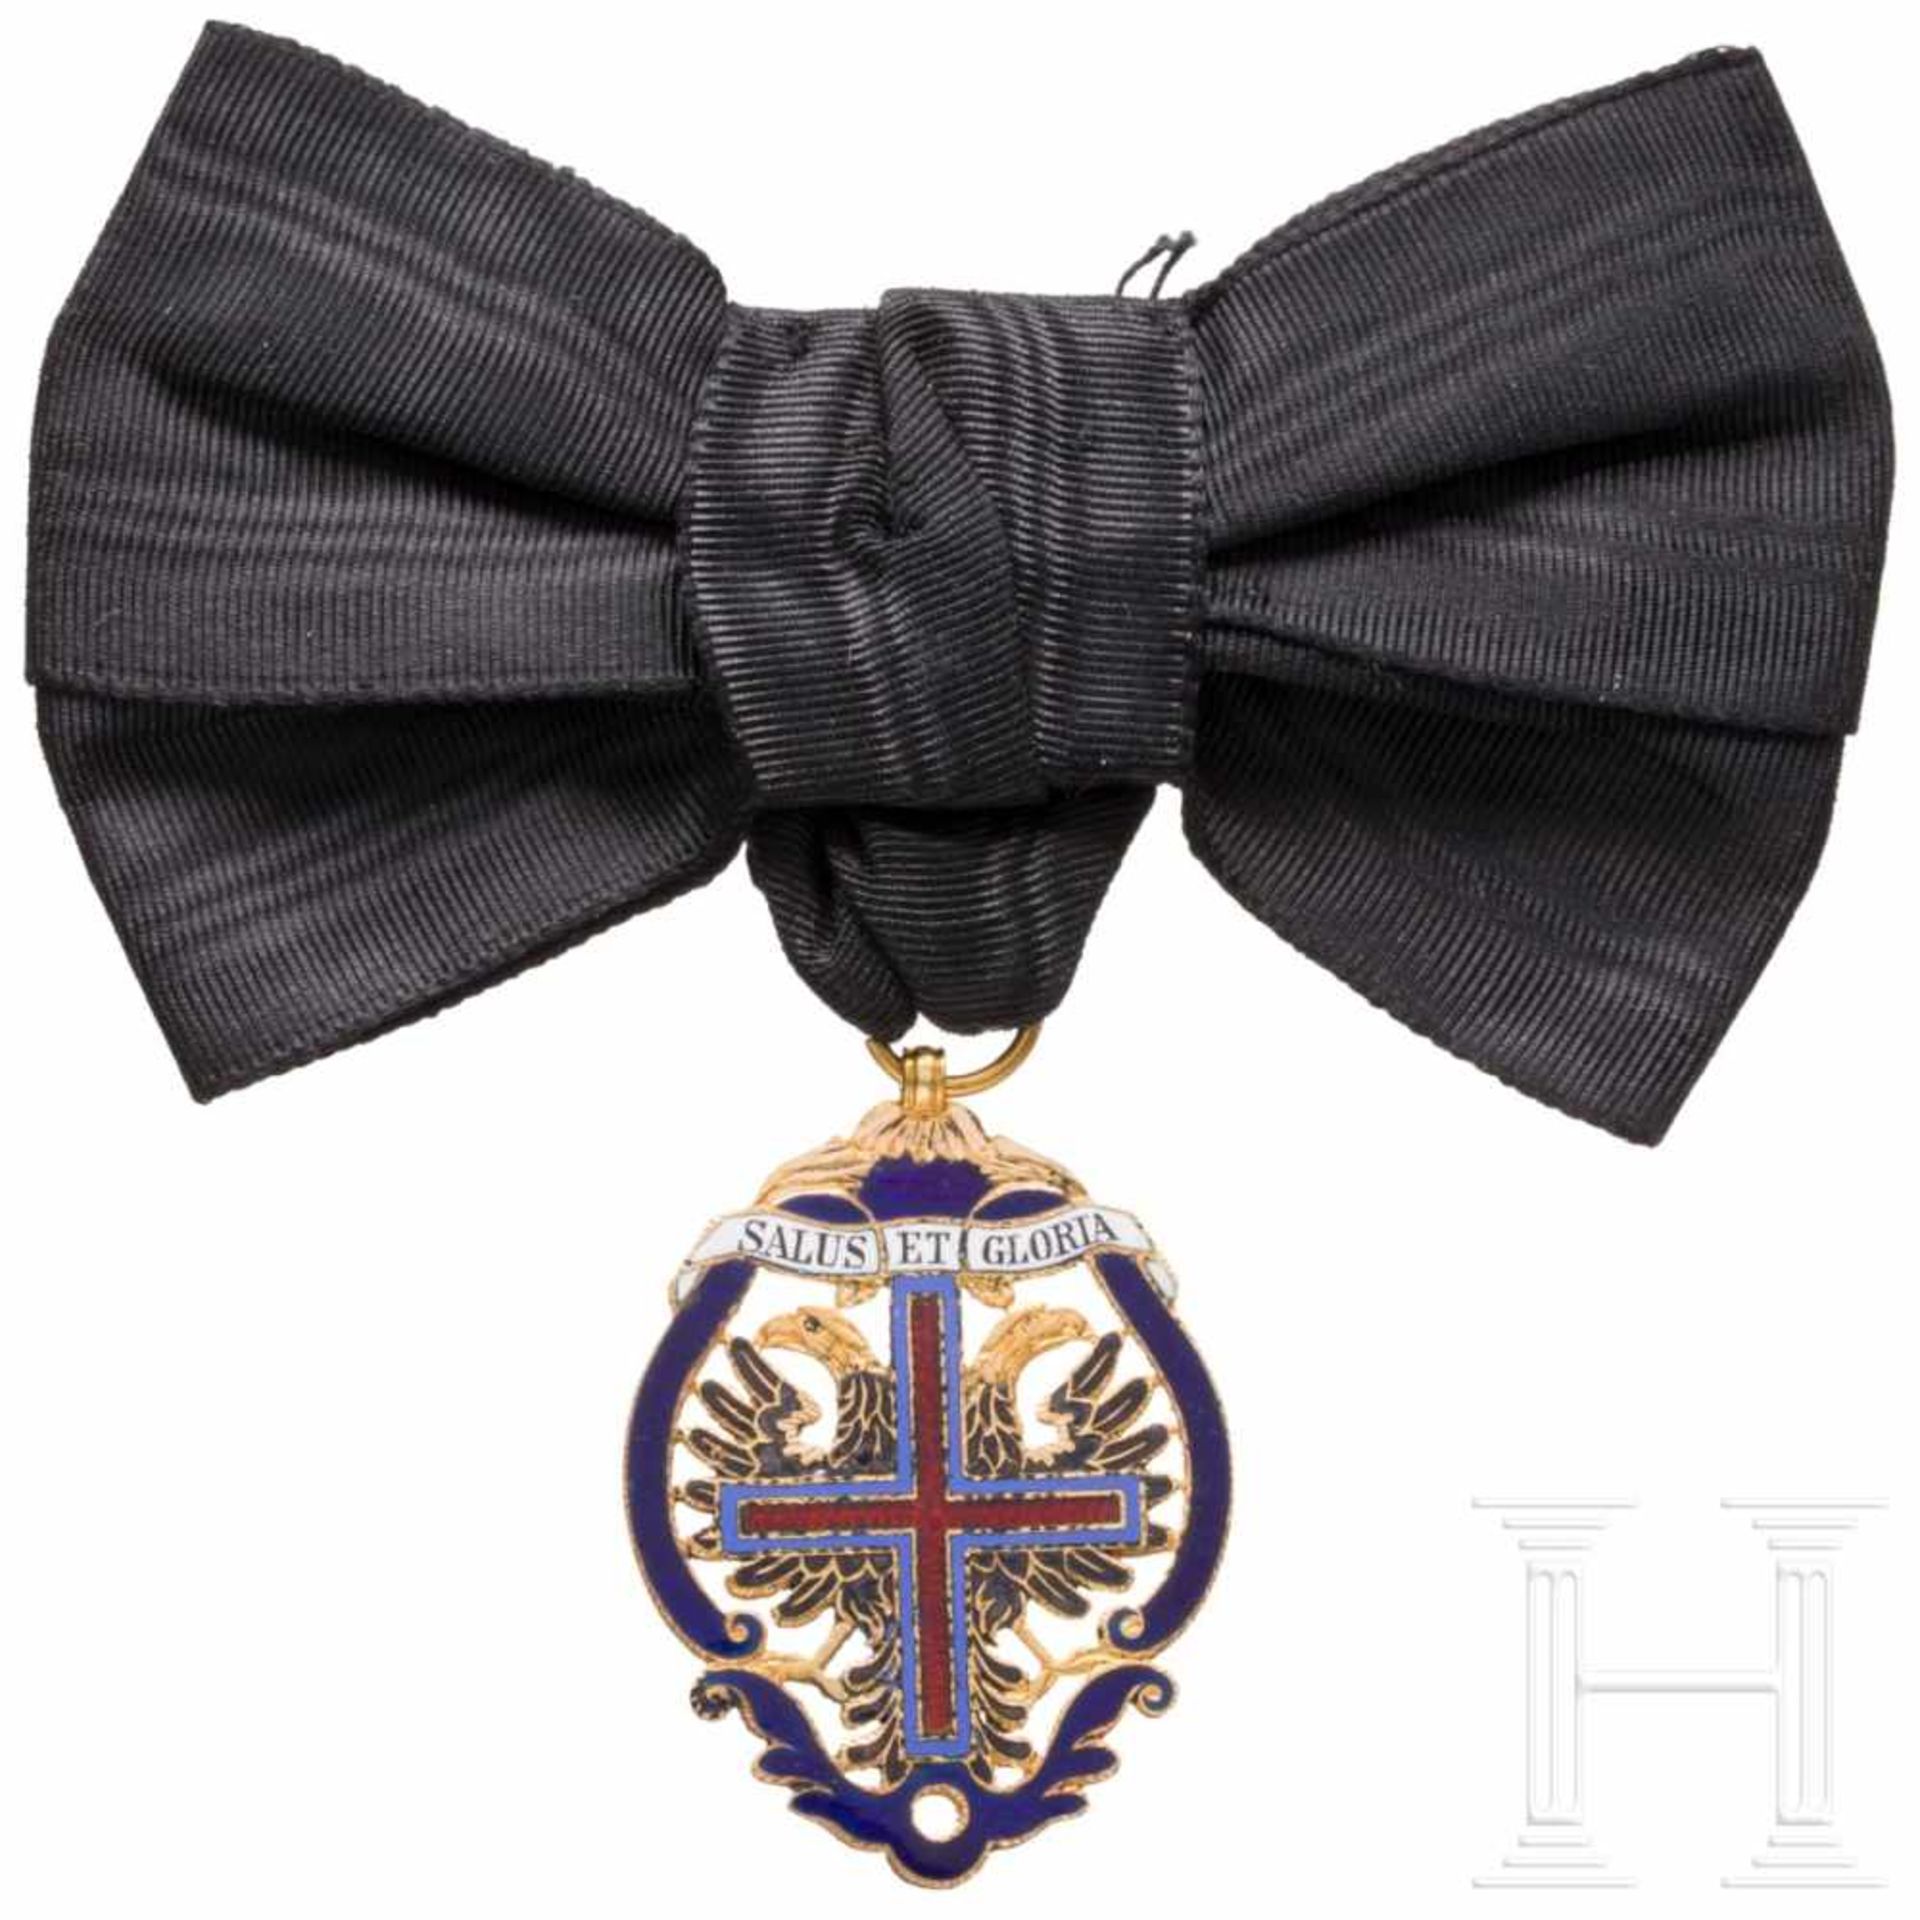 A Star Cross Order for ladiesIn aufwendiger Goldschmiedetechnik gefertigte Ordensdekoration des